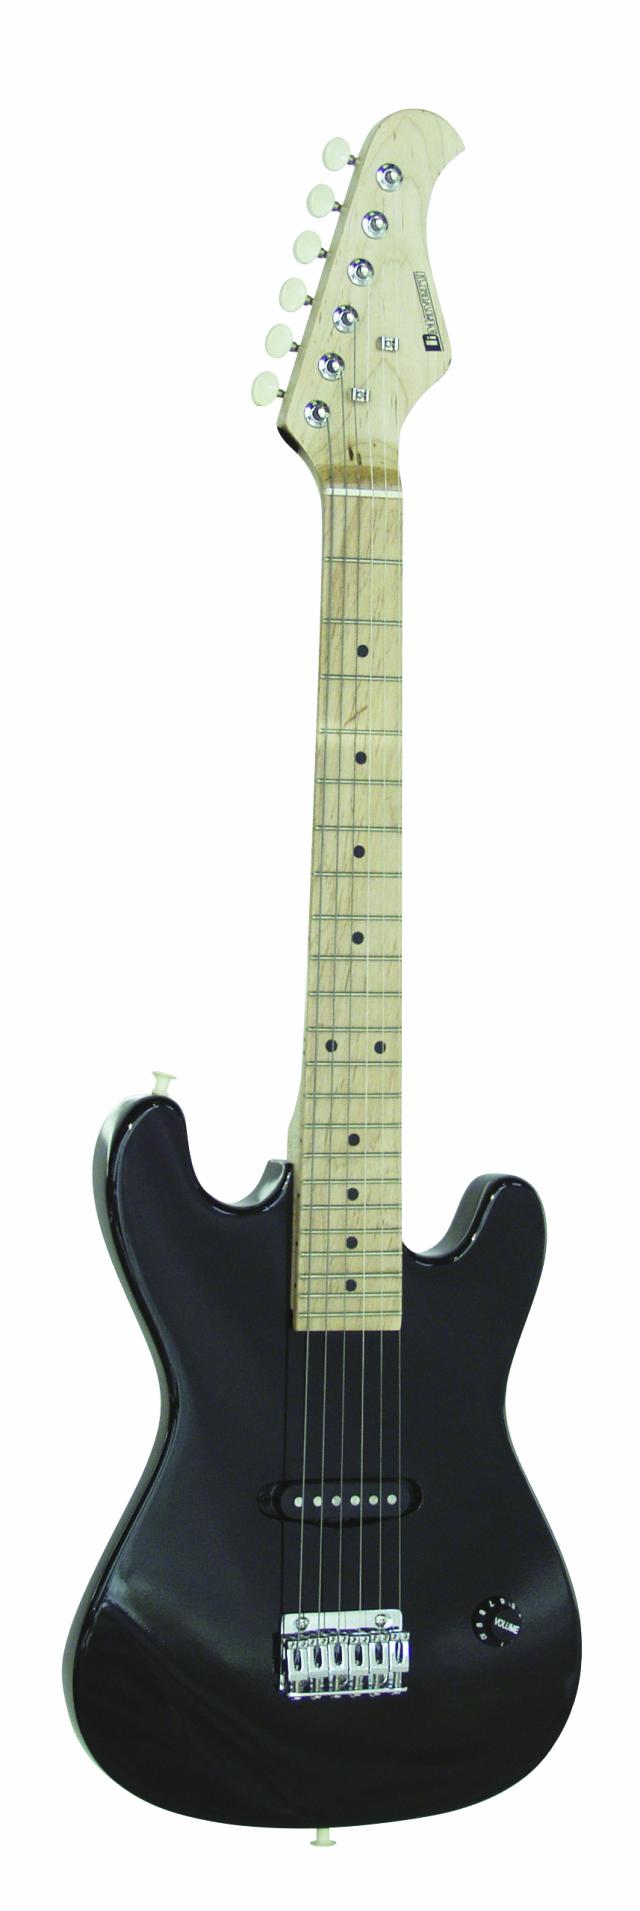 Dimavery elektrická kytara J-300 elektrická kytara Junior, černá